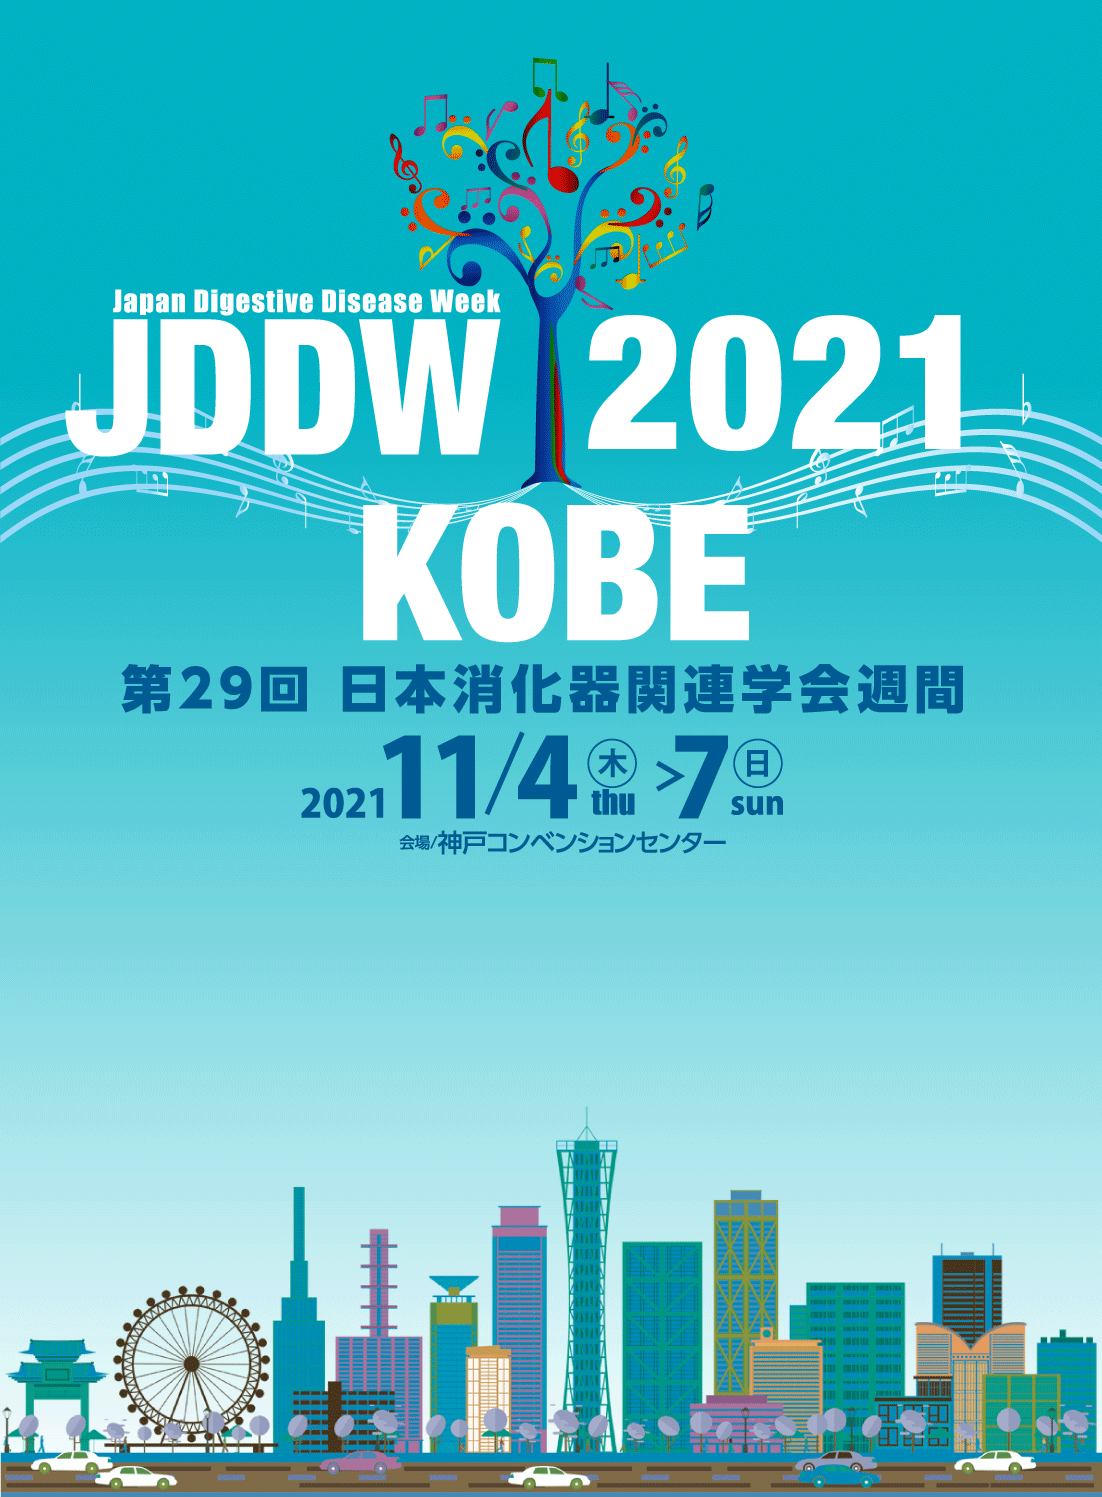 jddw2021